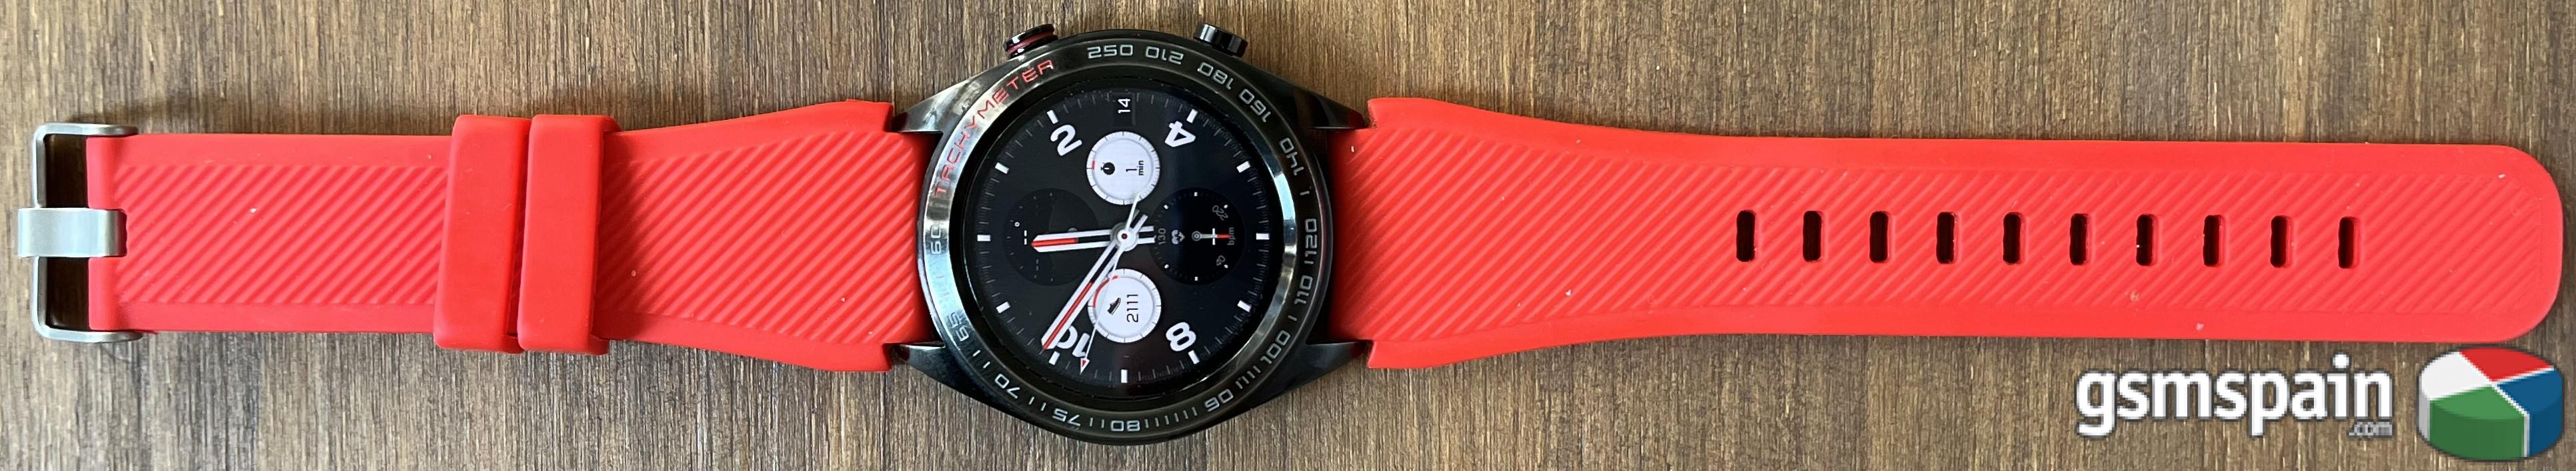 [VENDO] Smartwatch Honor Magic Watch con muchas correas y en perfecto estado